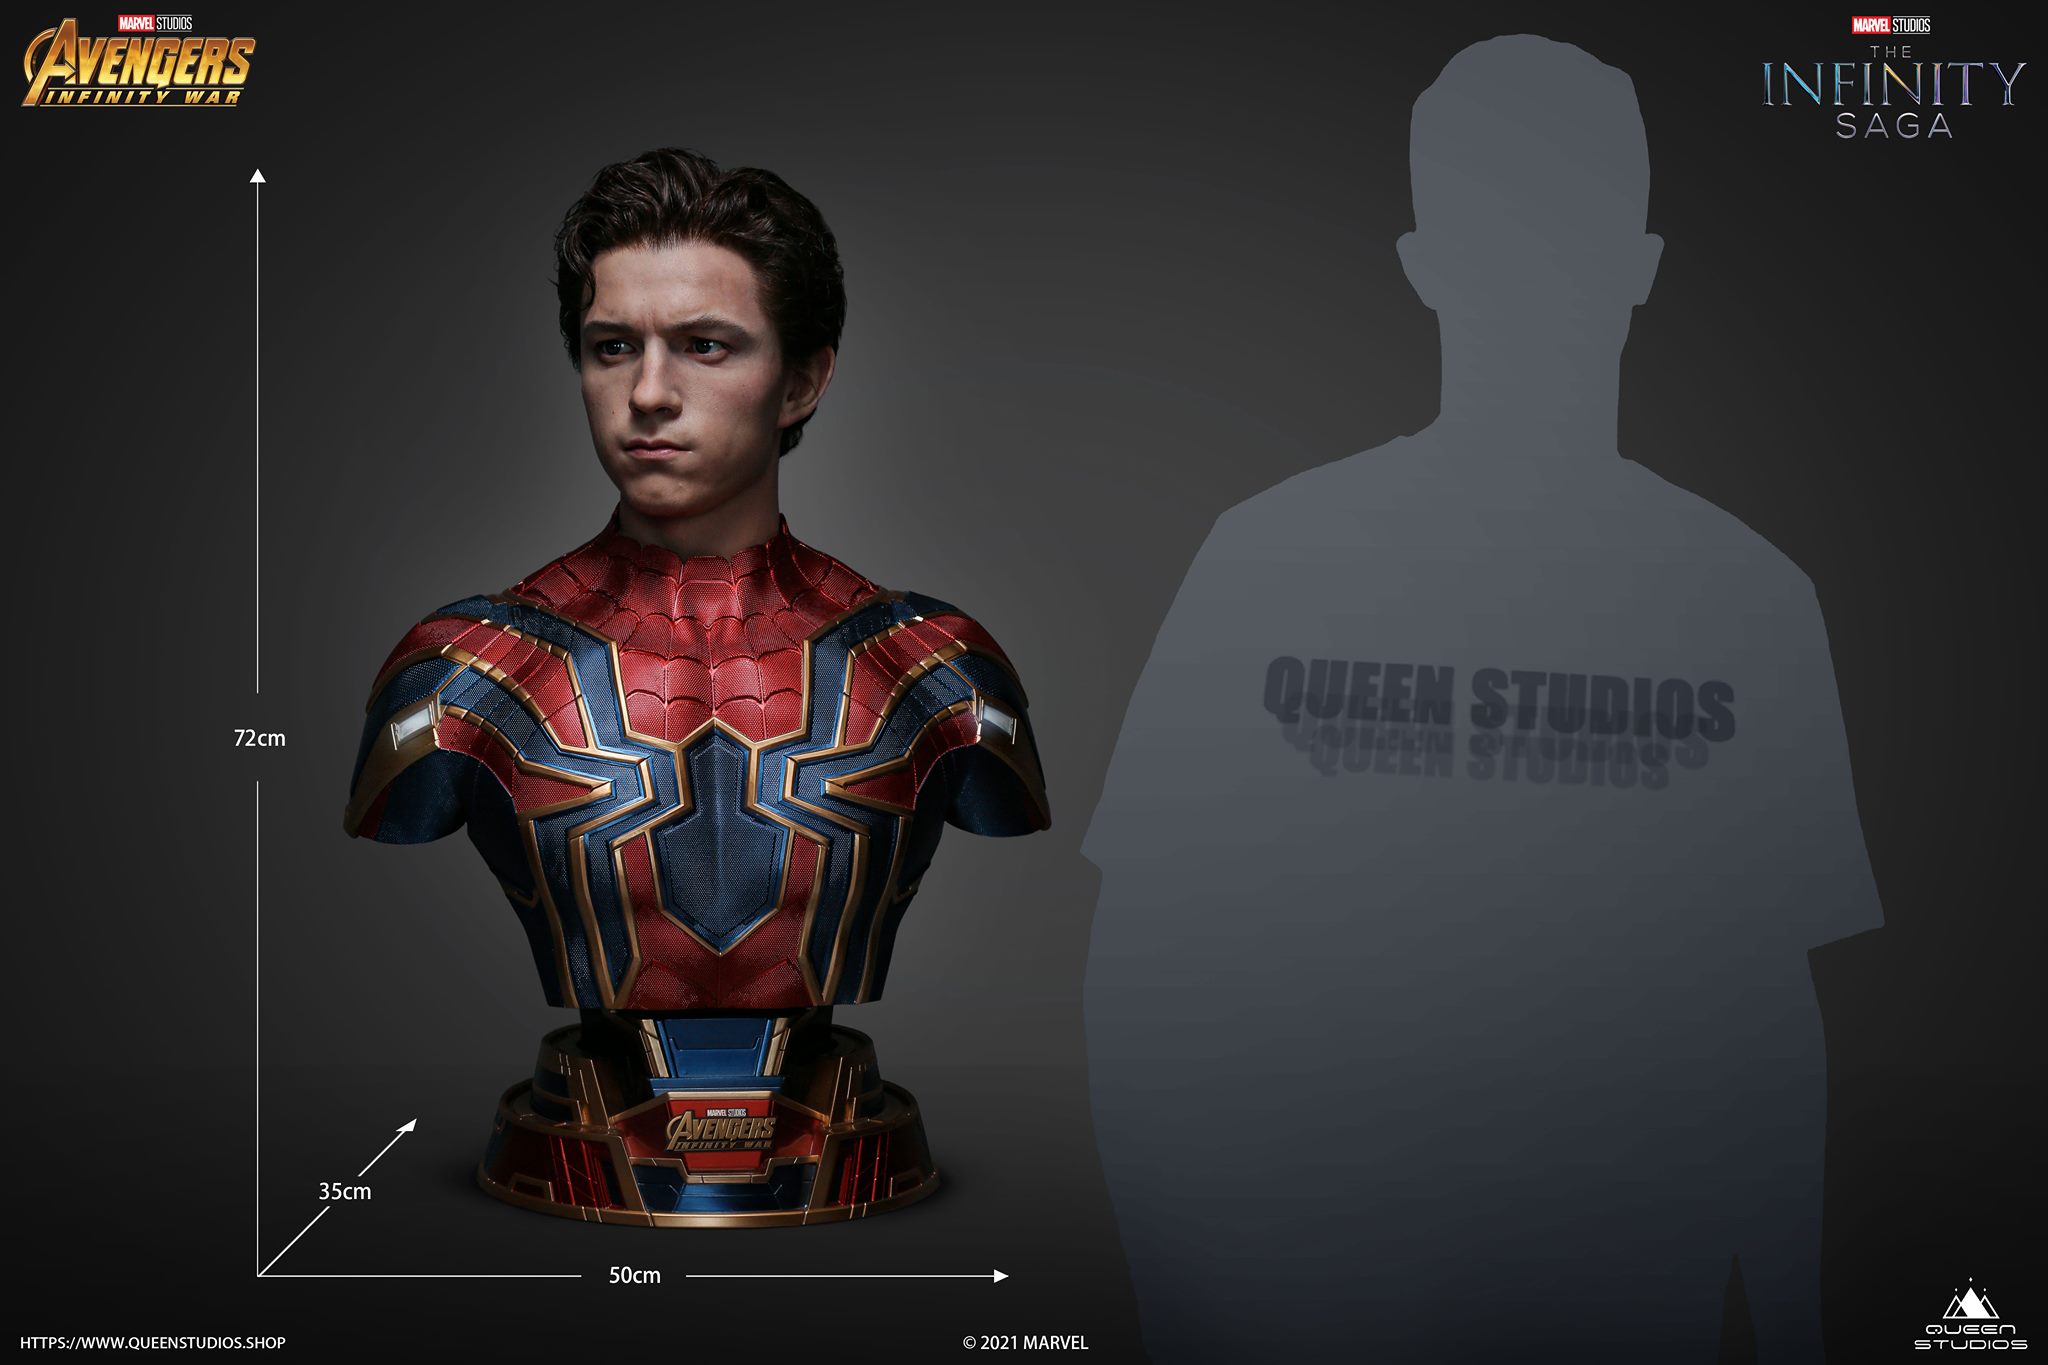 Image: Marvel/Queen Studios